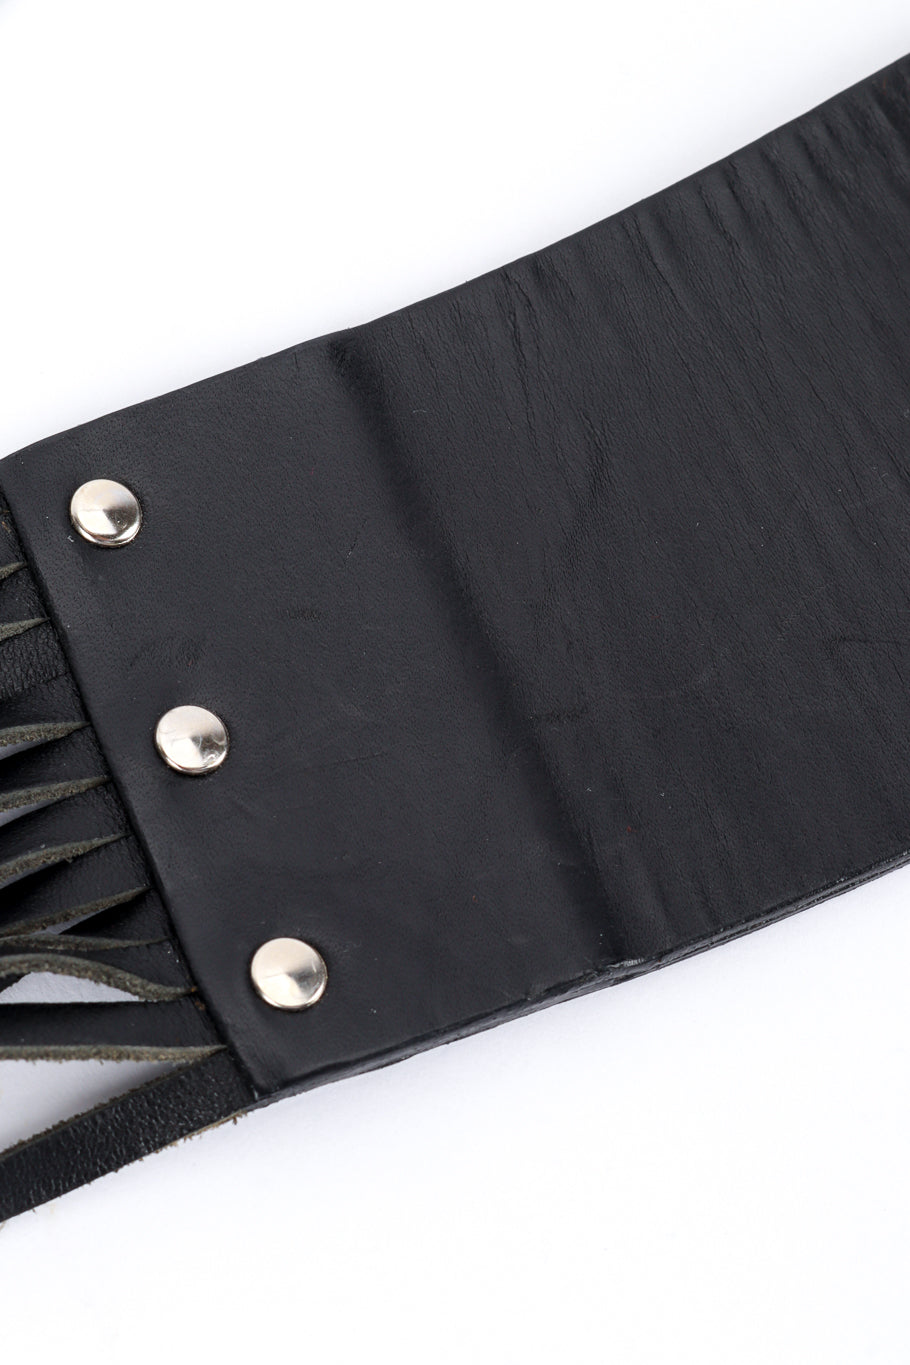 Jean Paul Gaultier fringe belt wear detail @RECESS LA